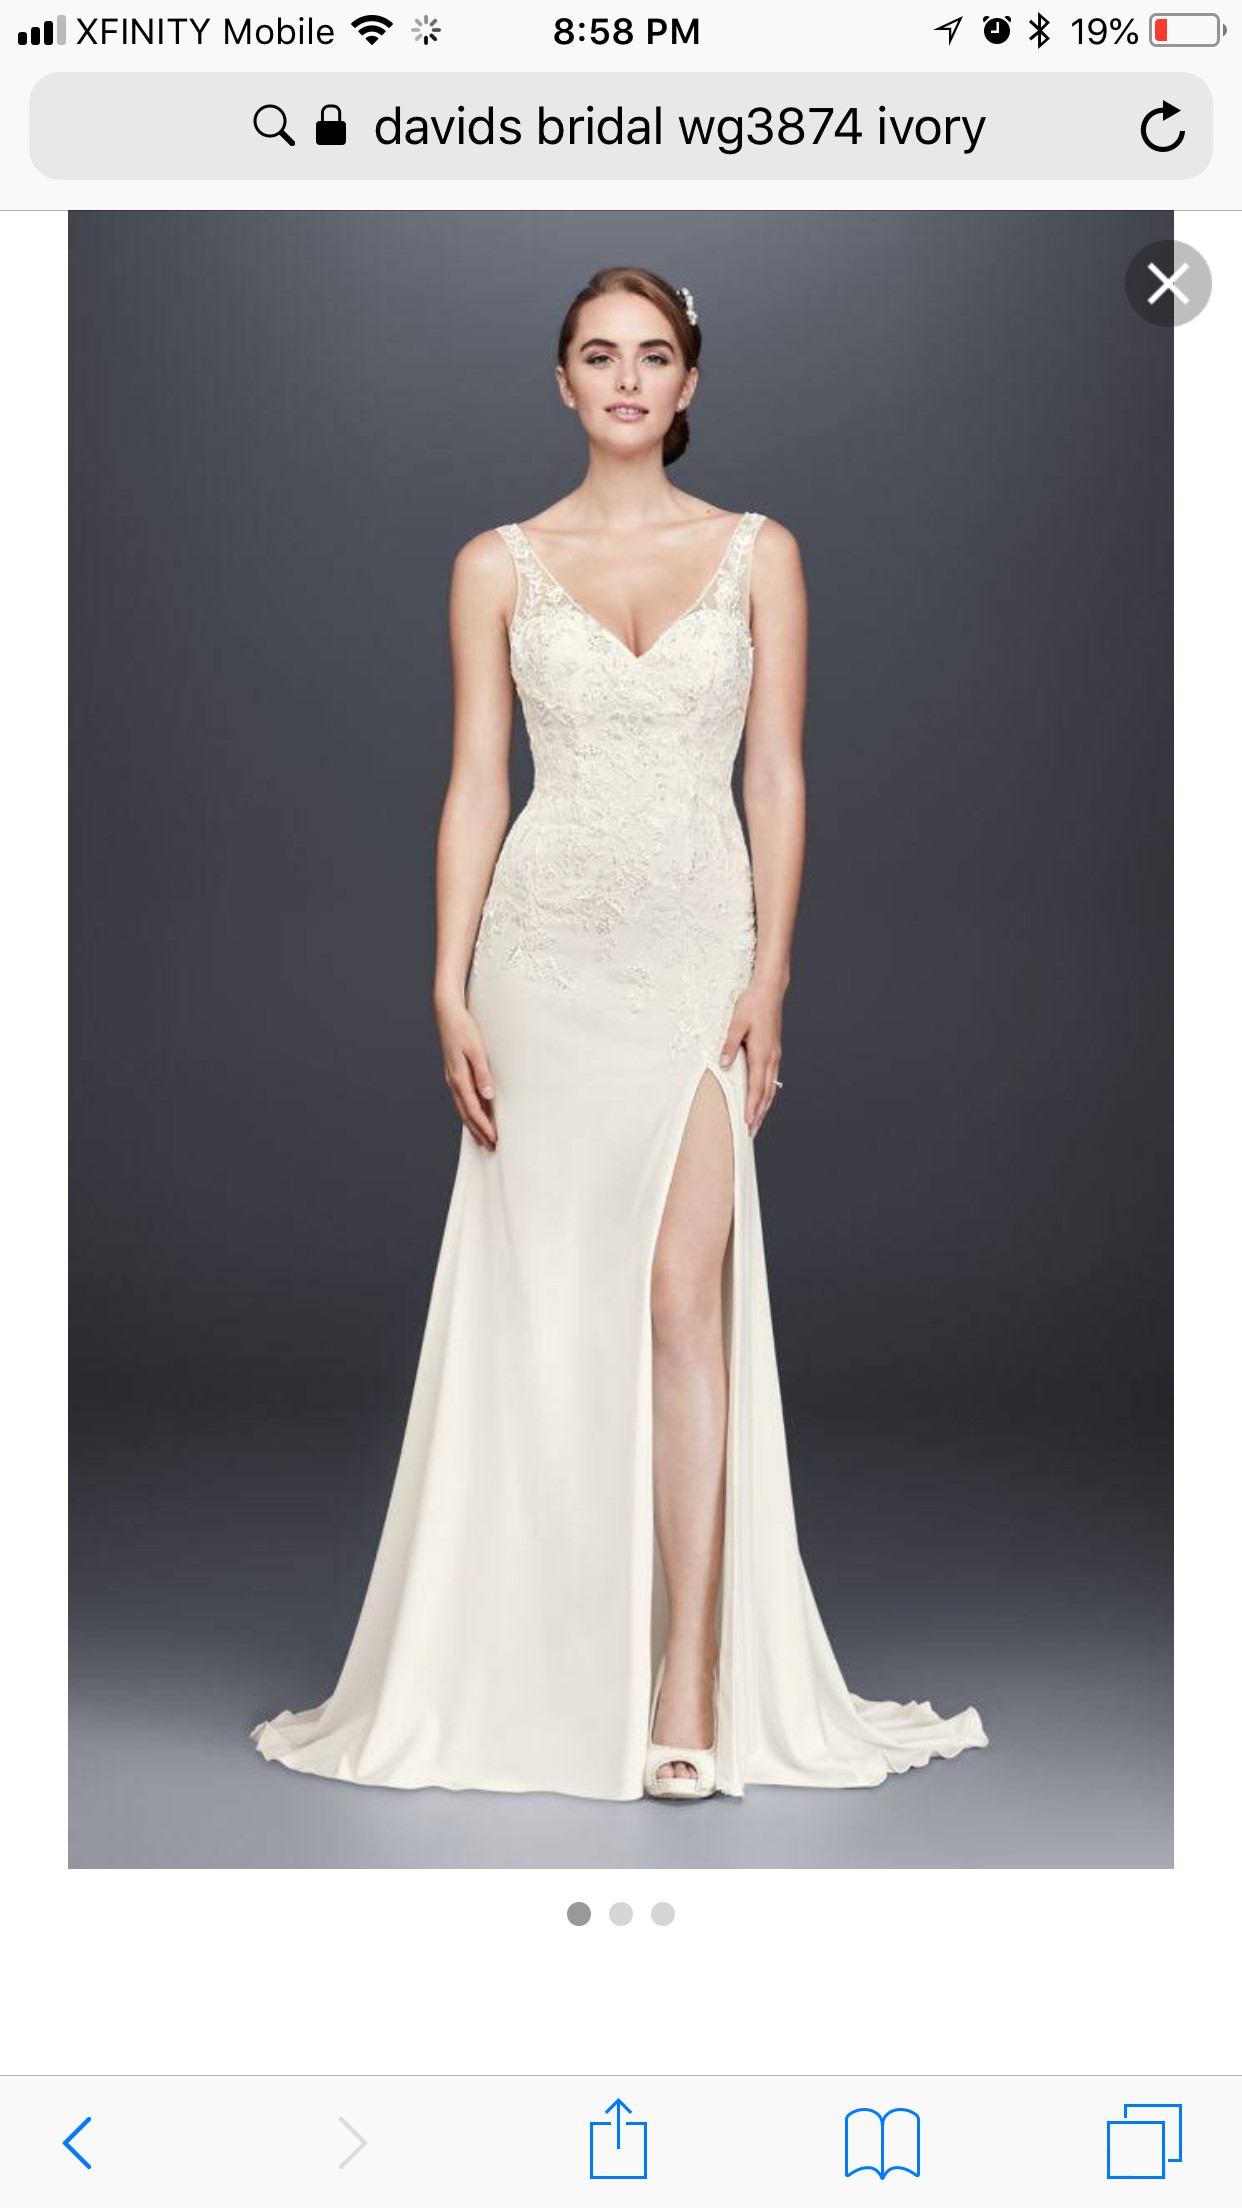 David's Bridal WG3874 ivory New Wedding Dress Save 17% - Stillwhite